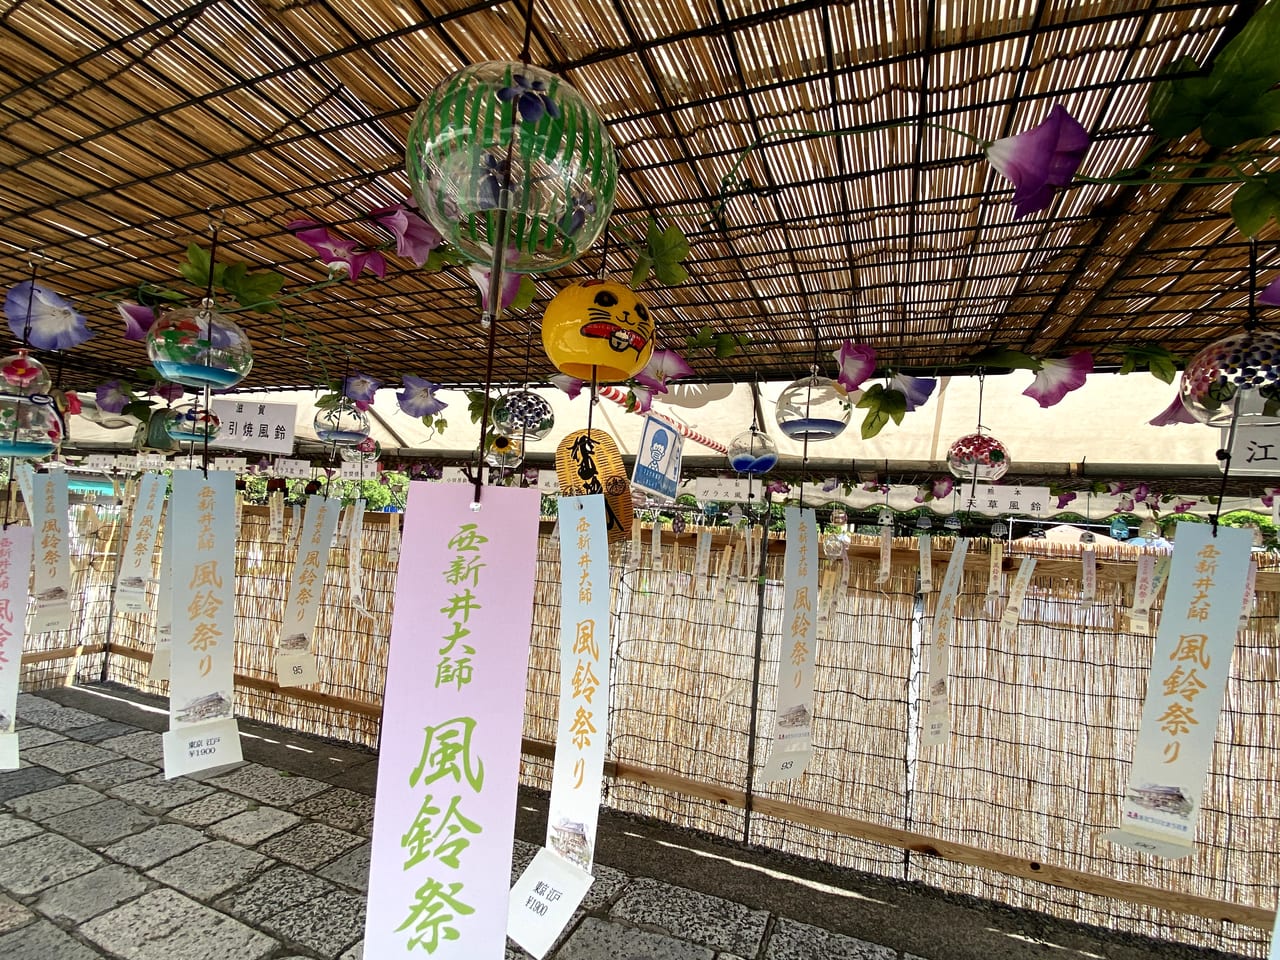 足立区 涼しい風鈴の音色が響き渡る 西新井大師 風鈴祭り 8月1日まで開催中です 号外net 足立区